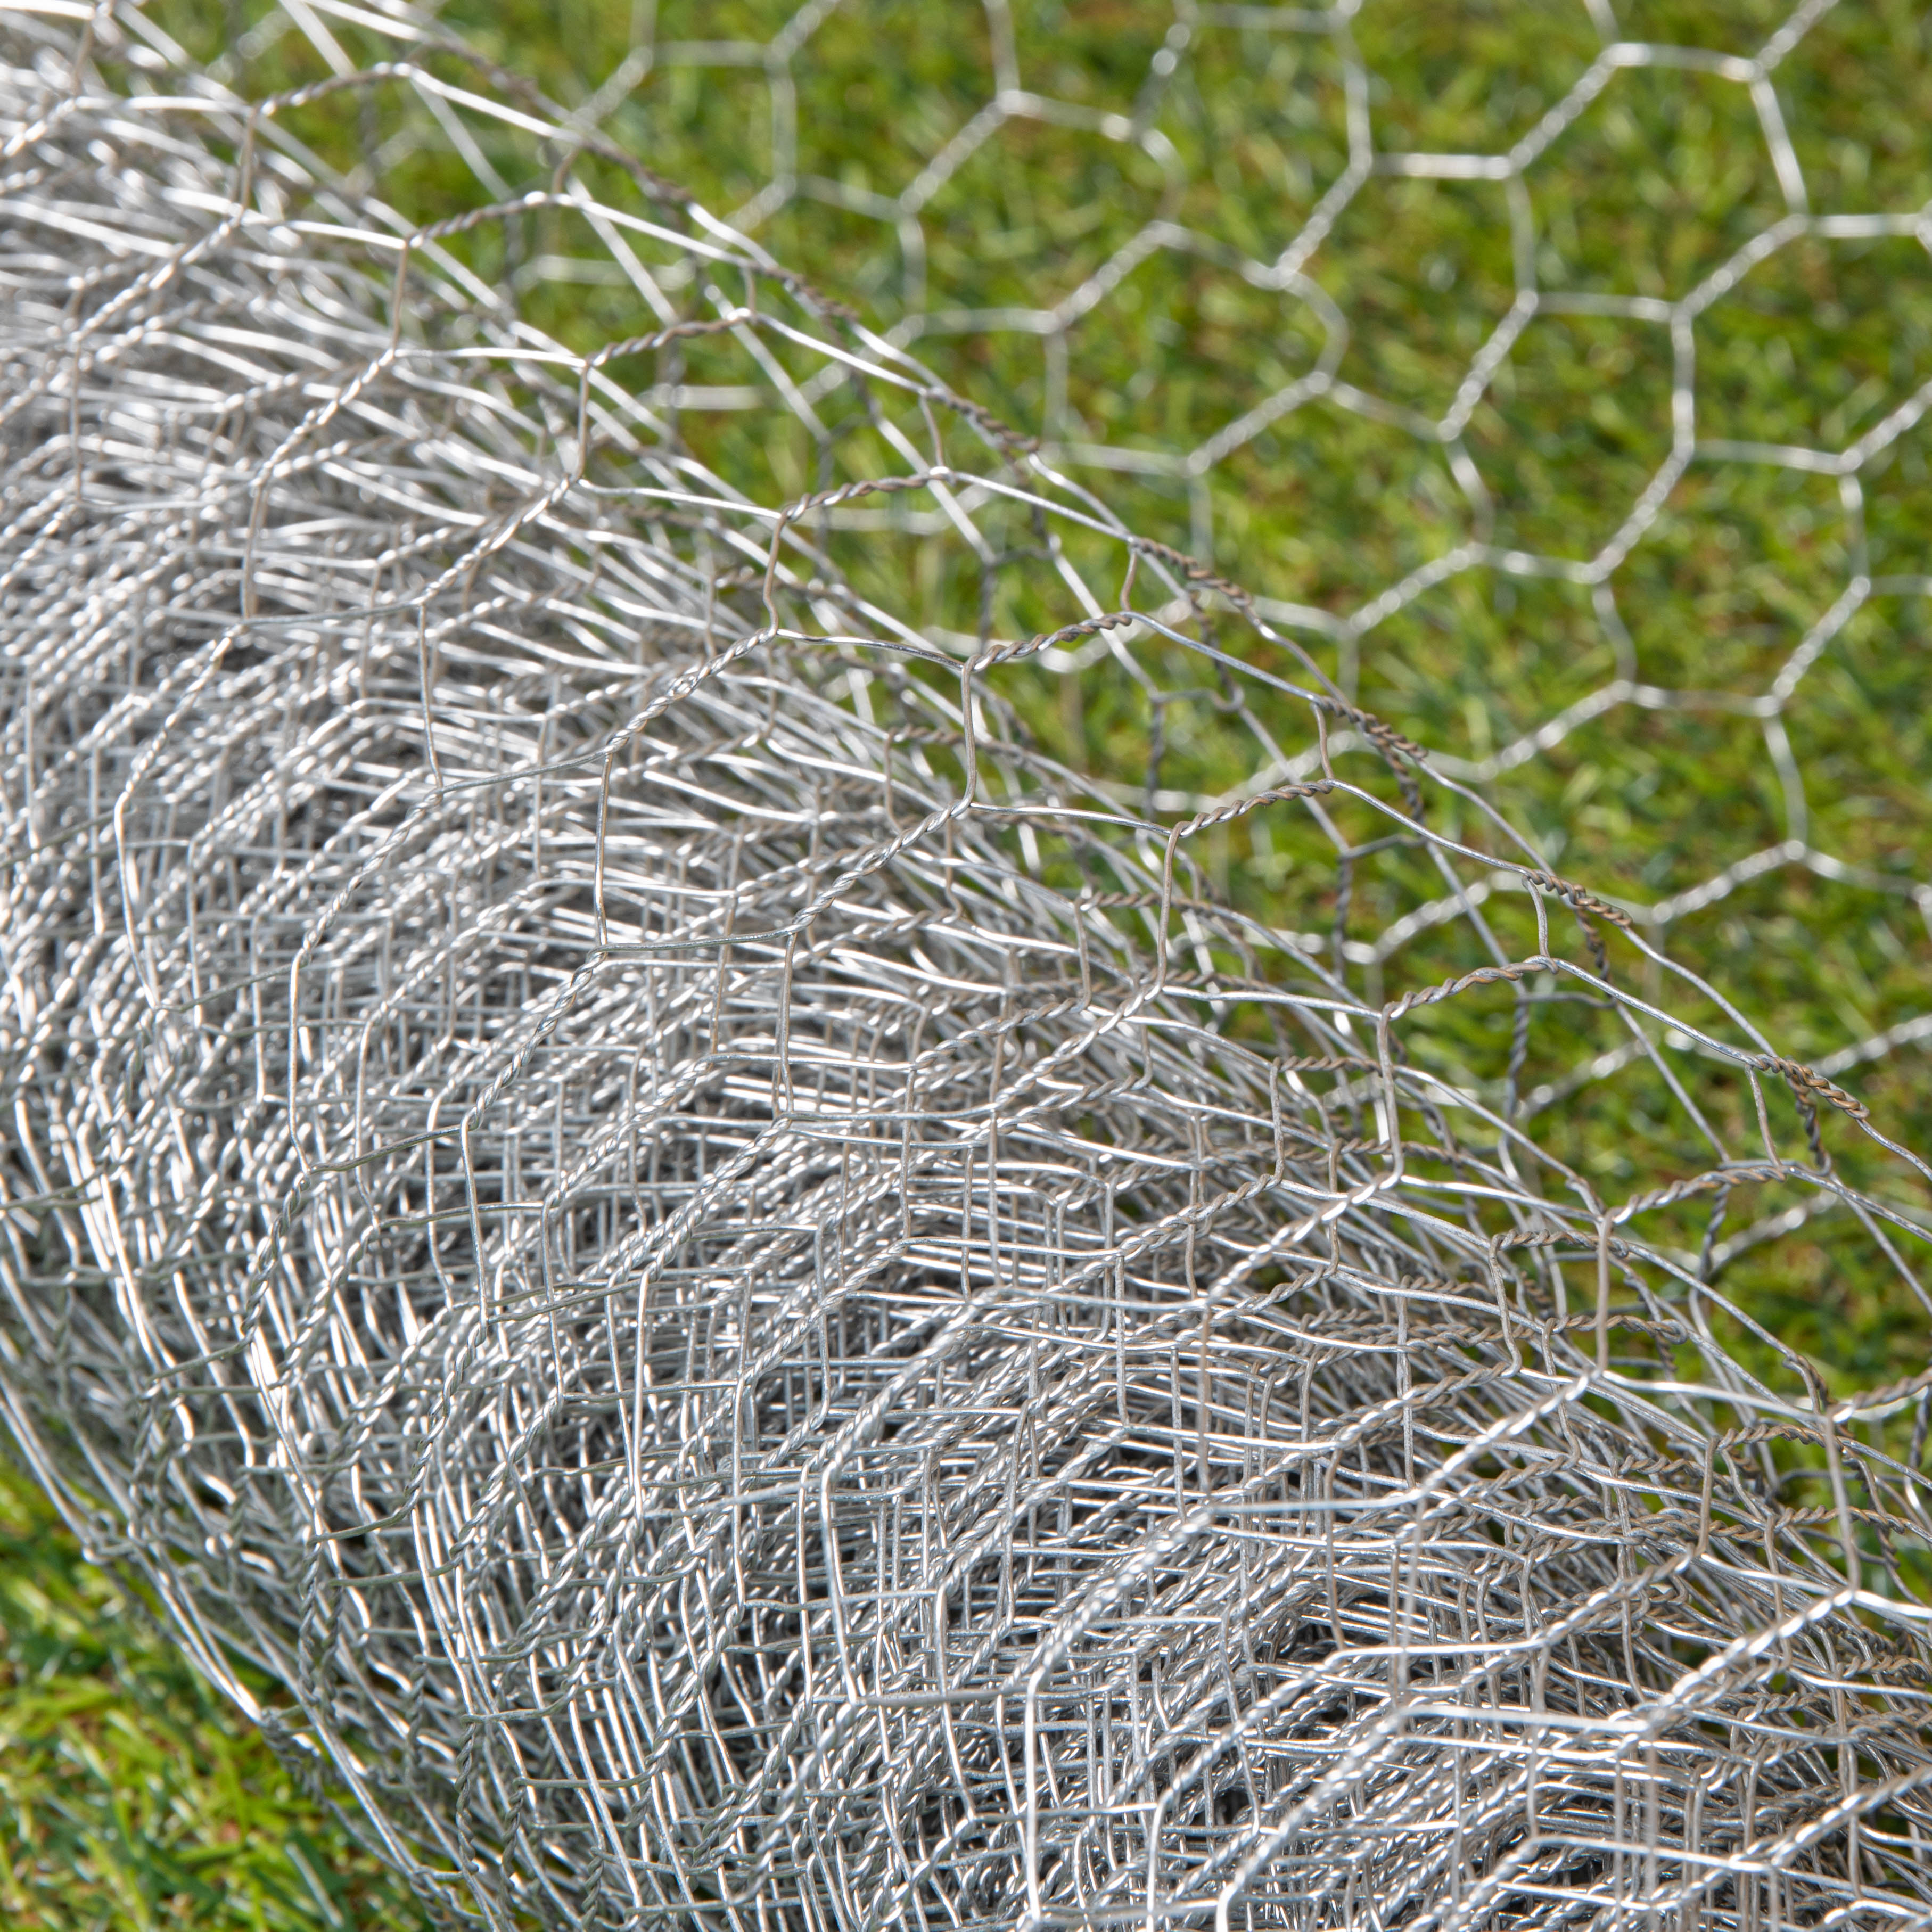 10m x 90cm x 25mm Galvanised Steel Chicken Garden Wire Netting / Fencing